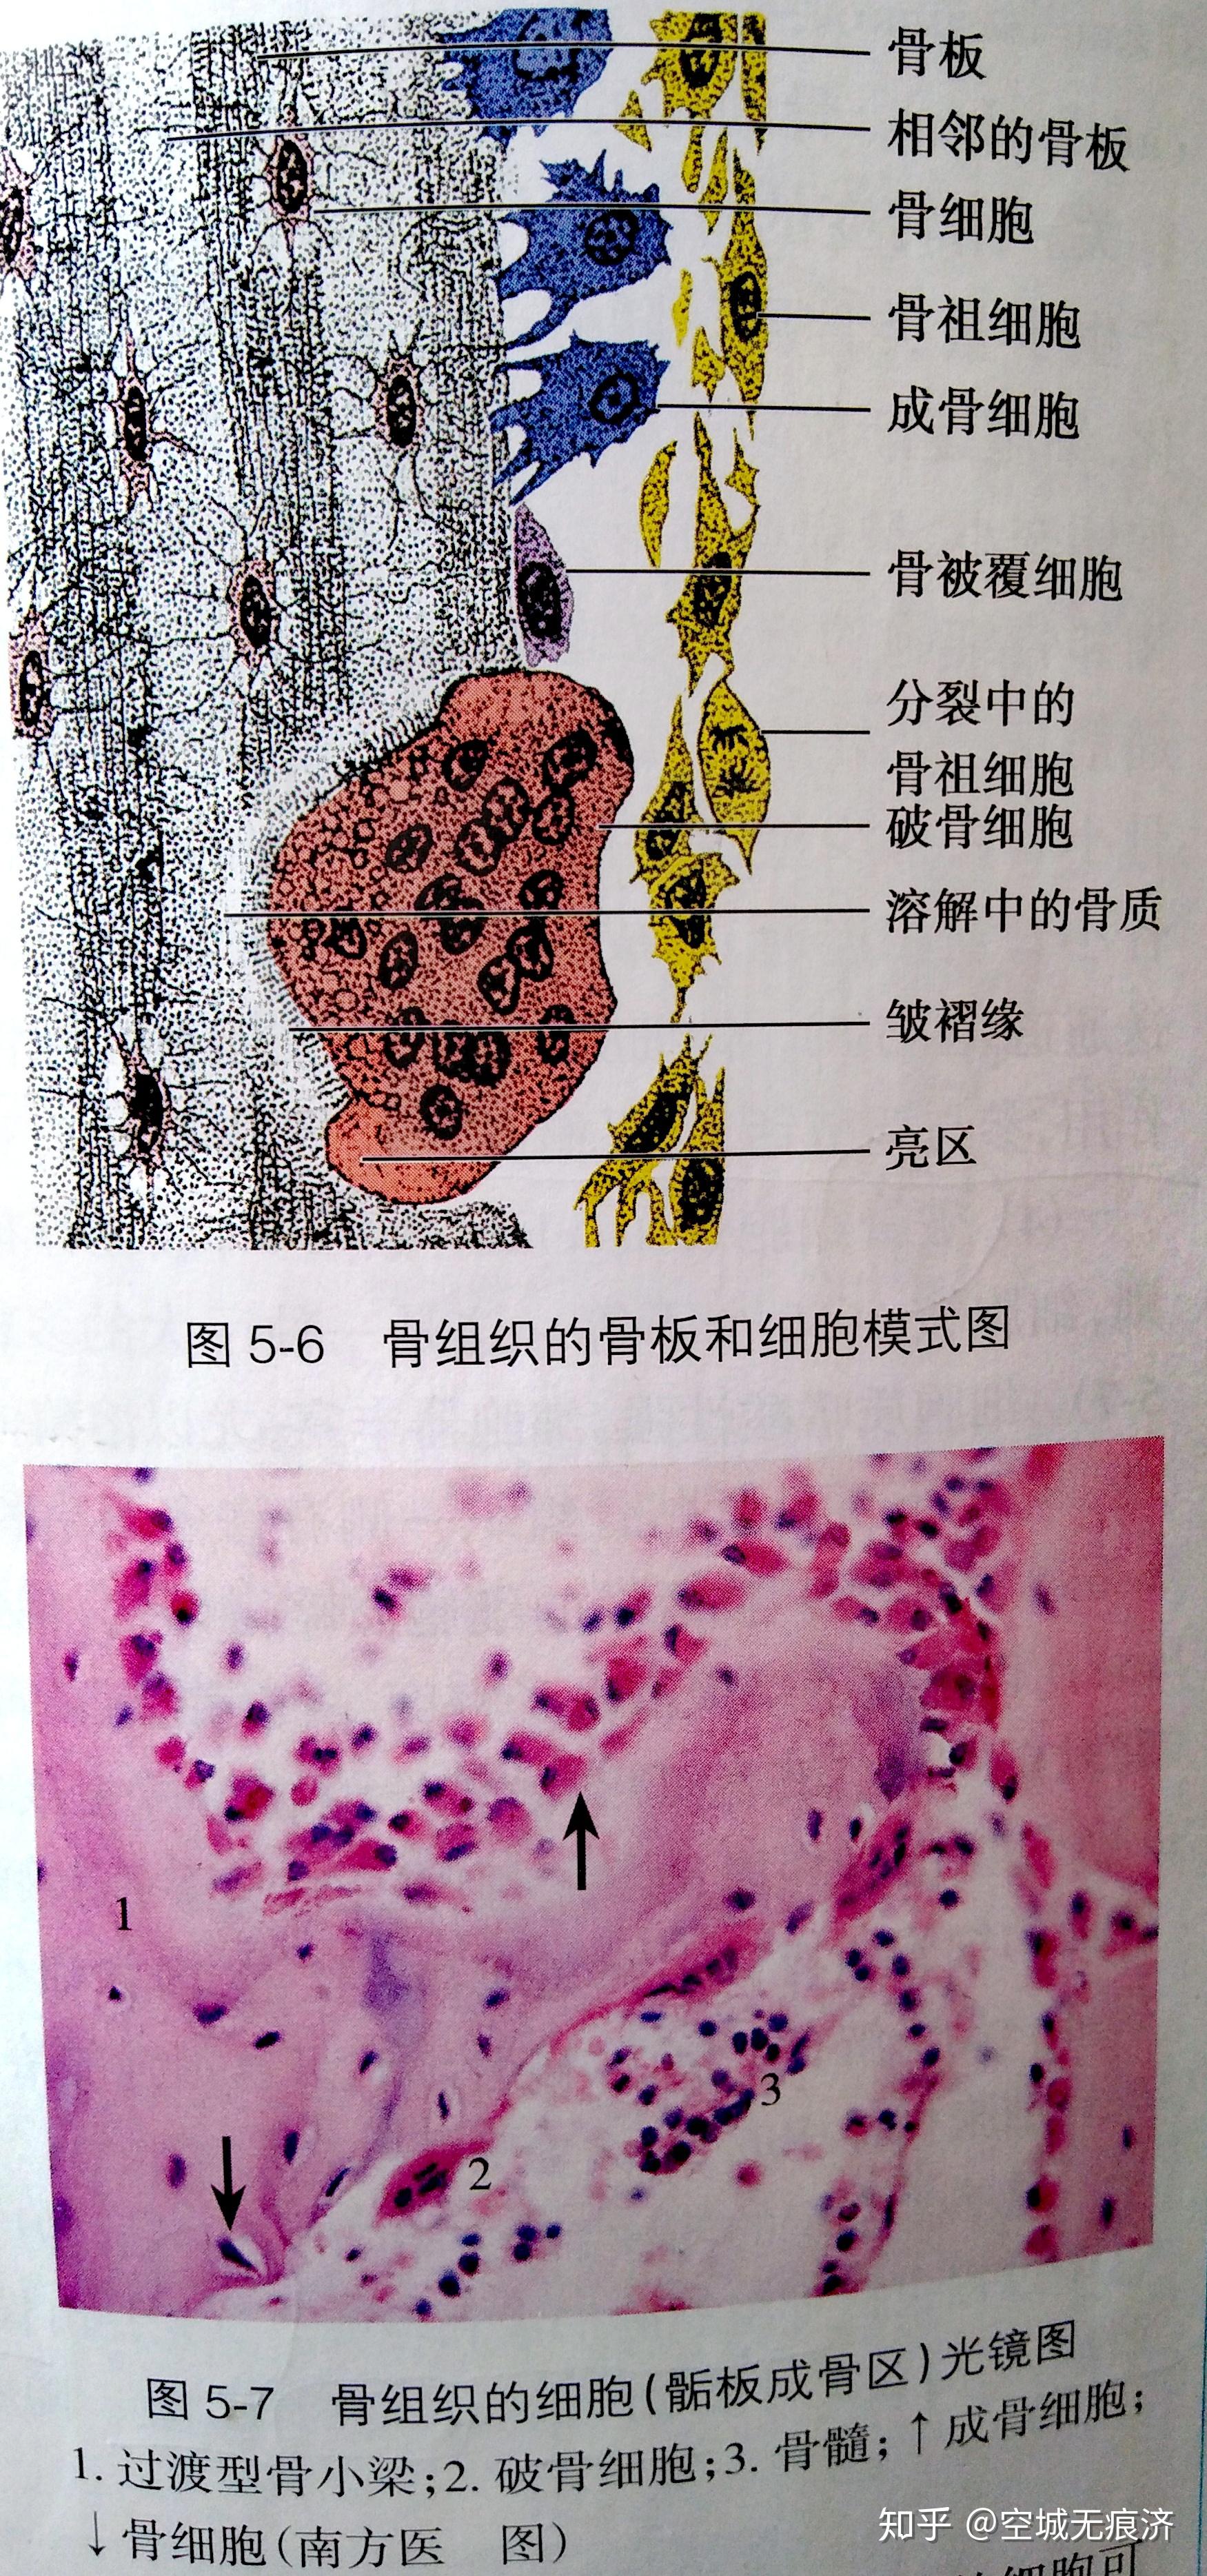 组织学与胚胎学红蓝铅笔绘图 - 知乎